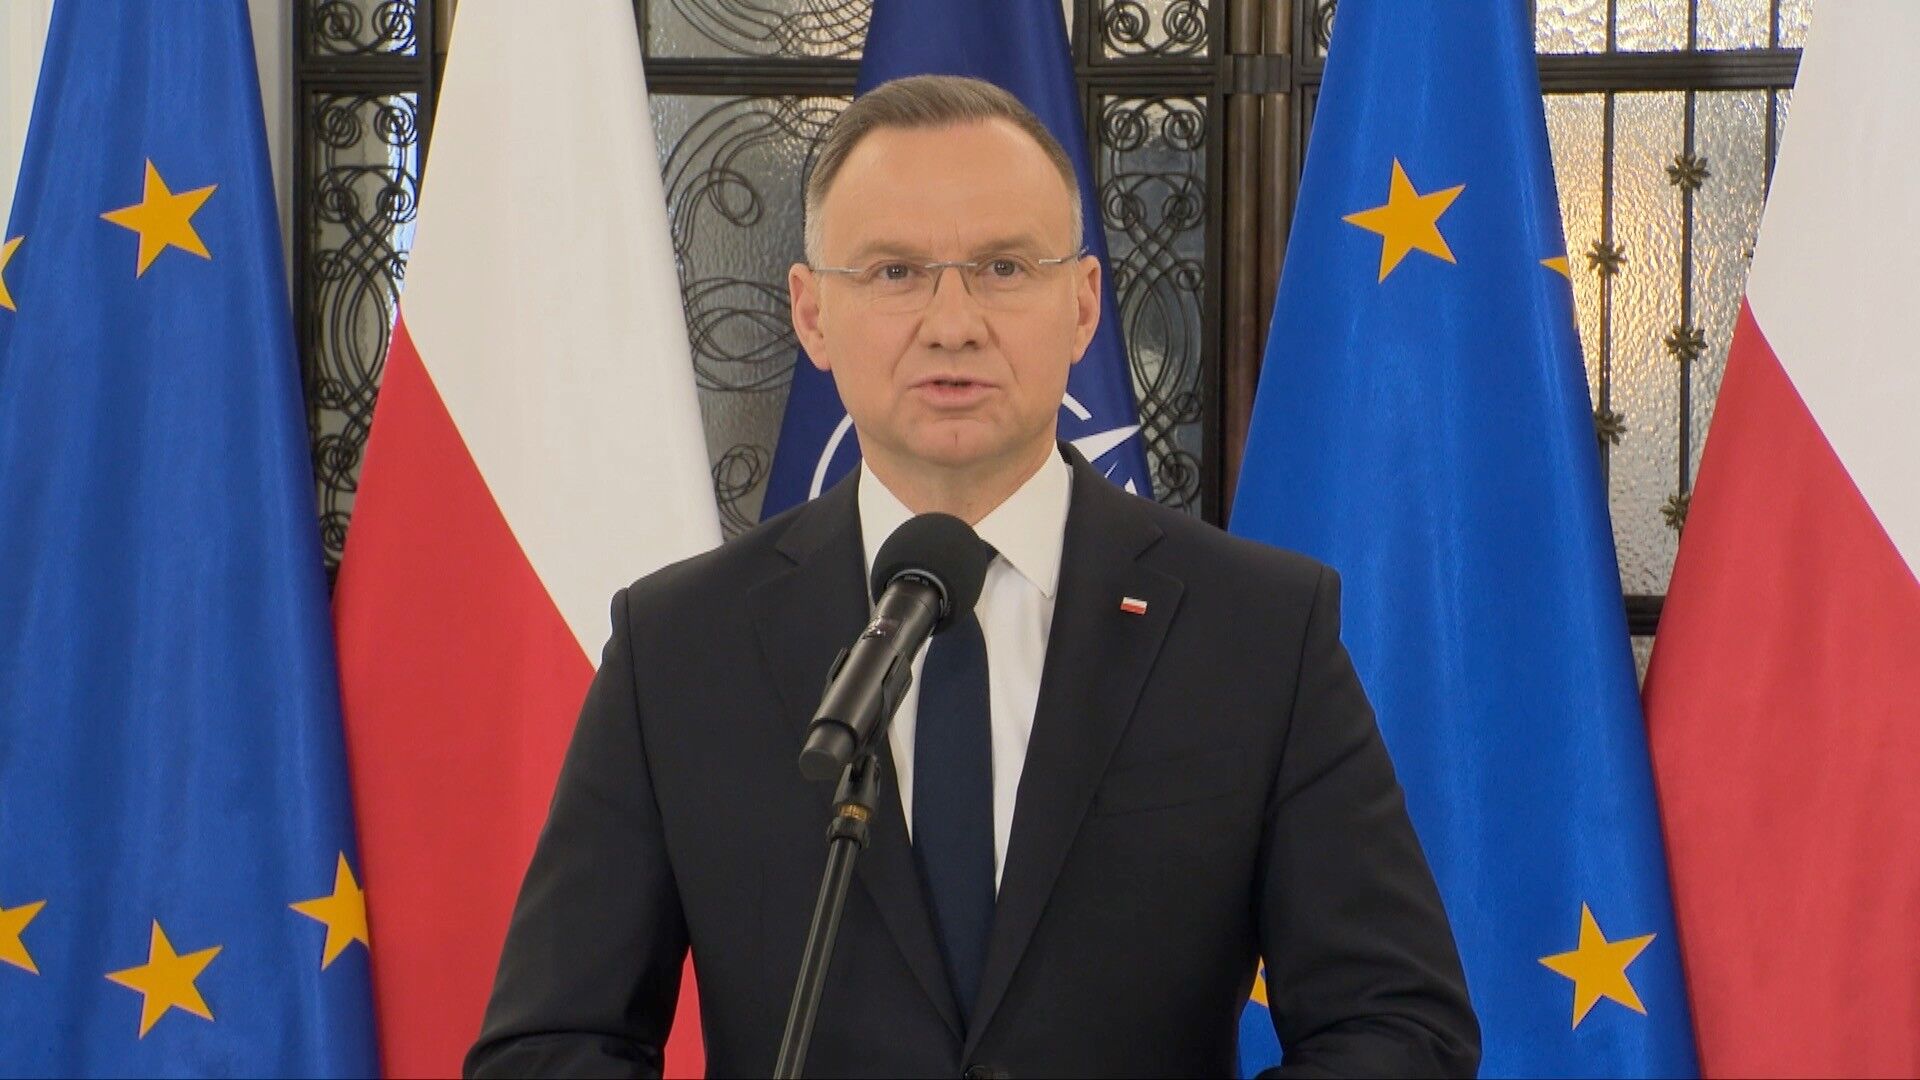 Prezydent o wystąpieniu Sikorskiego: opowiadanie o złej pozycji Polski w UE jest zwykłą bzdurą